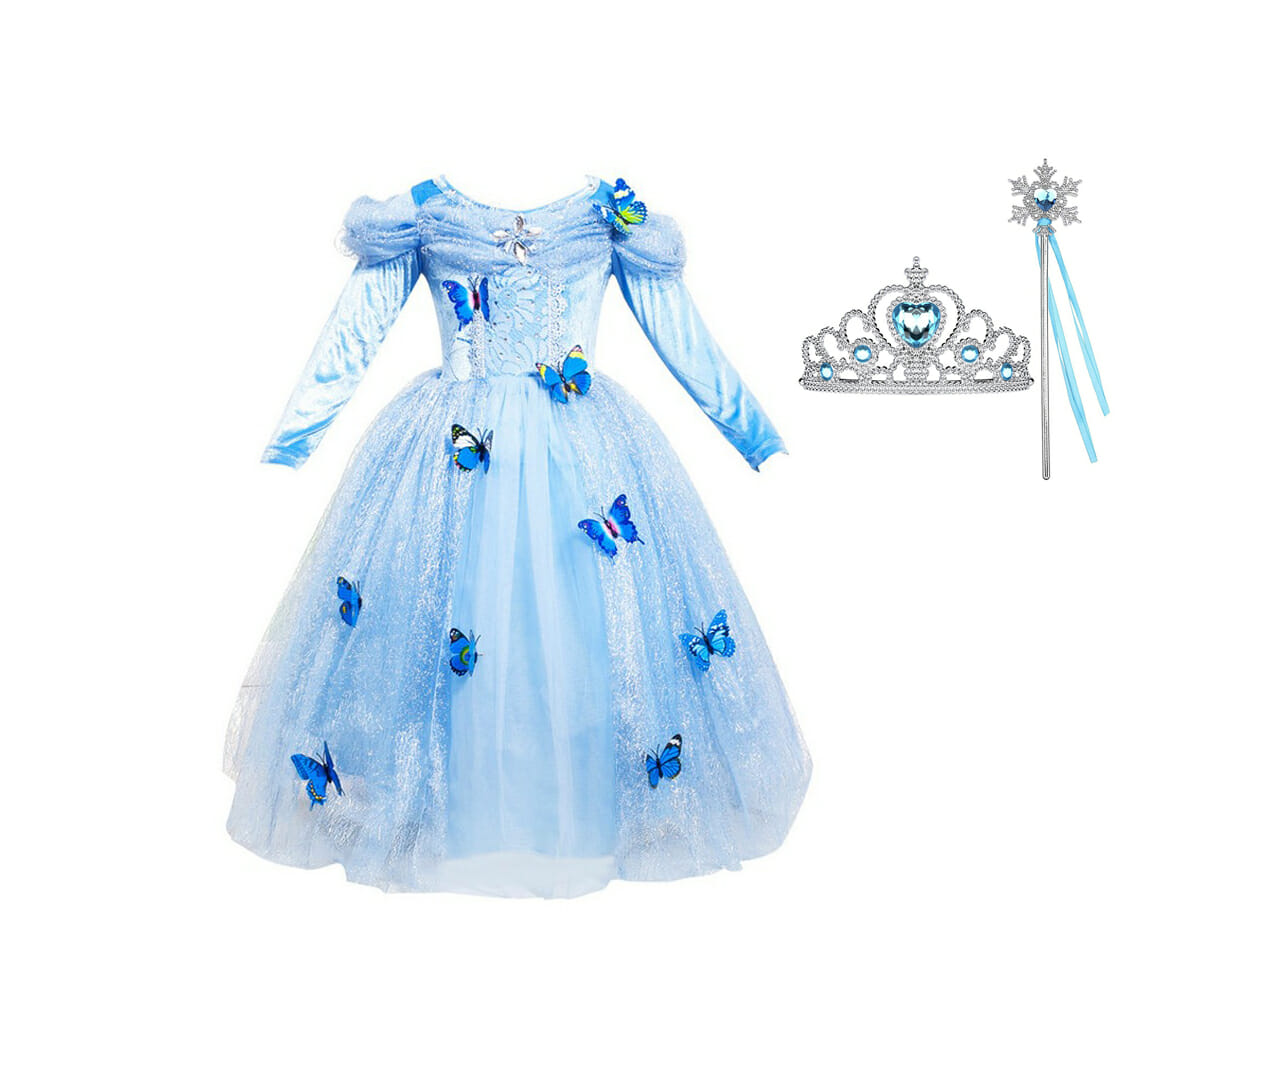 Cinderella - Prinsessenjurk + Toverstaf Lint + Kroon - blauw - Verkleedjurk  - Het Betere Merk